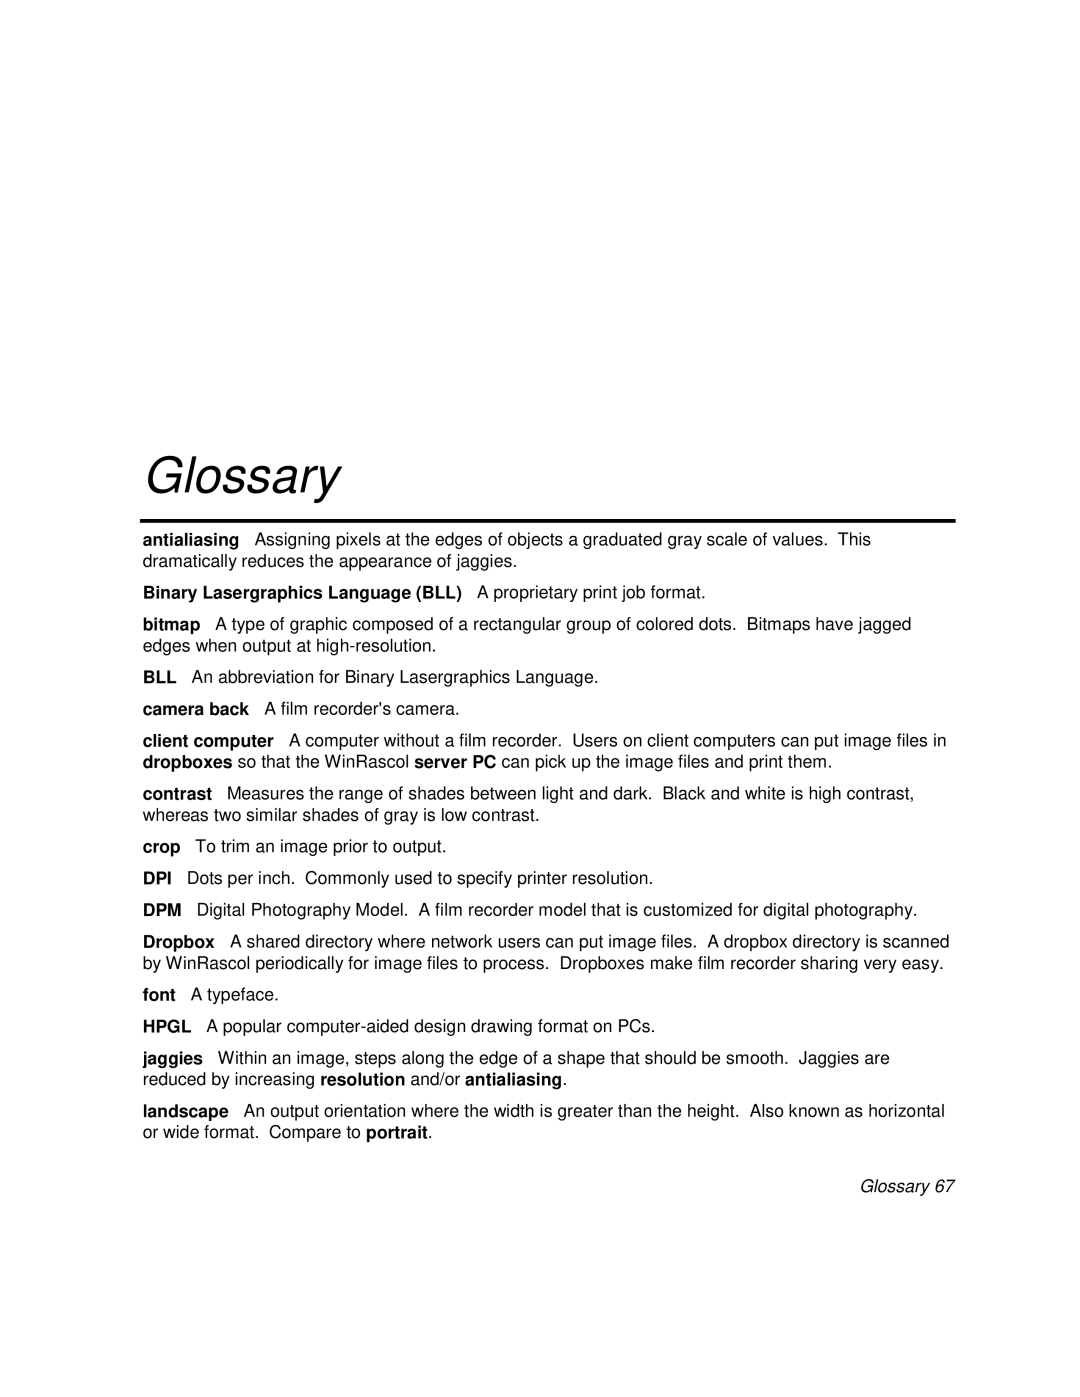 Polaroid BLL Generator manual Glossary 